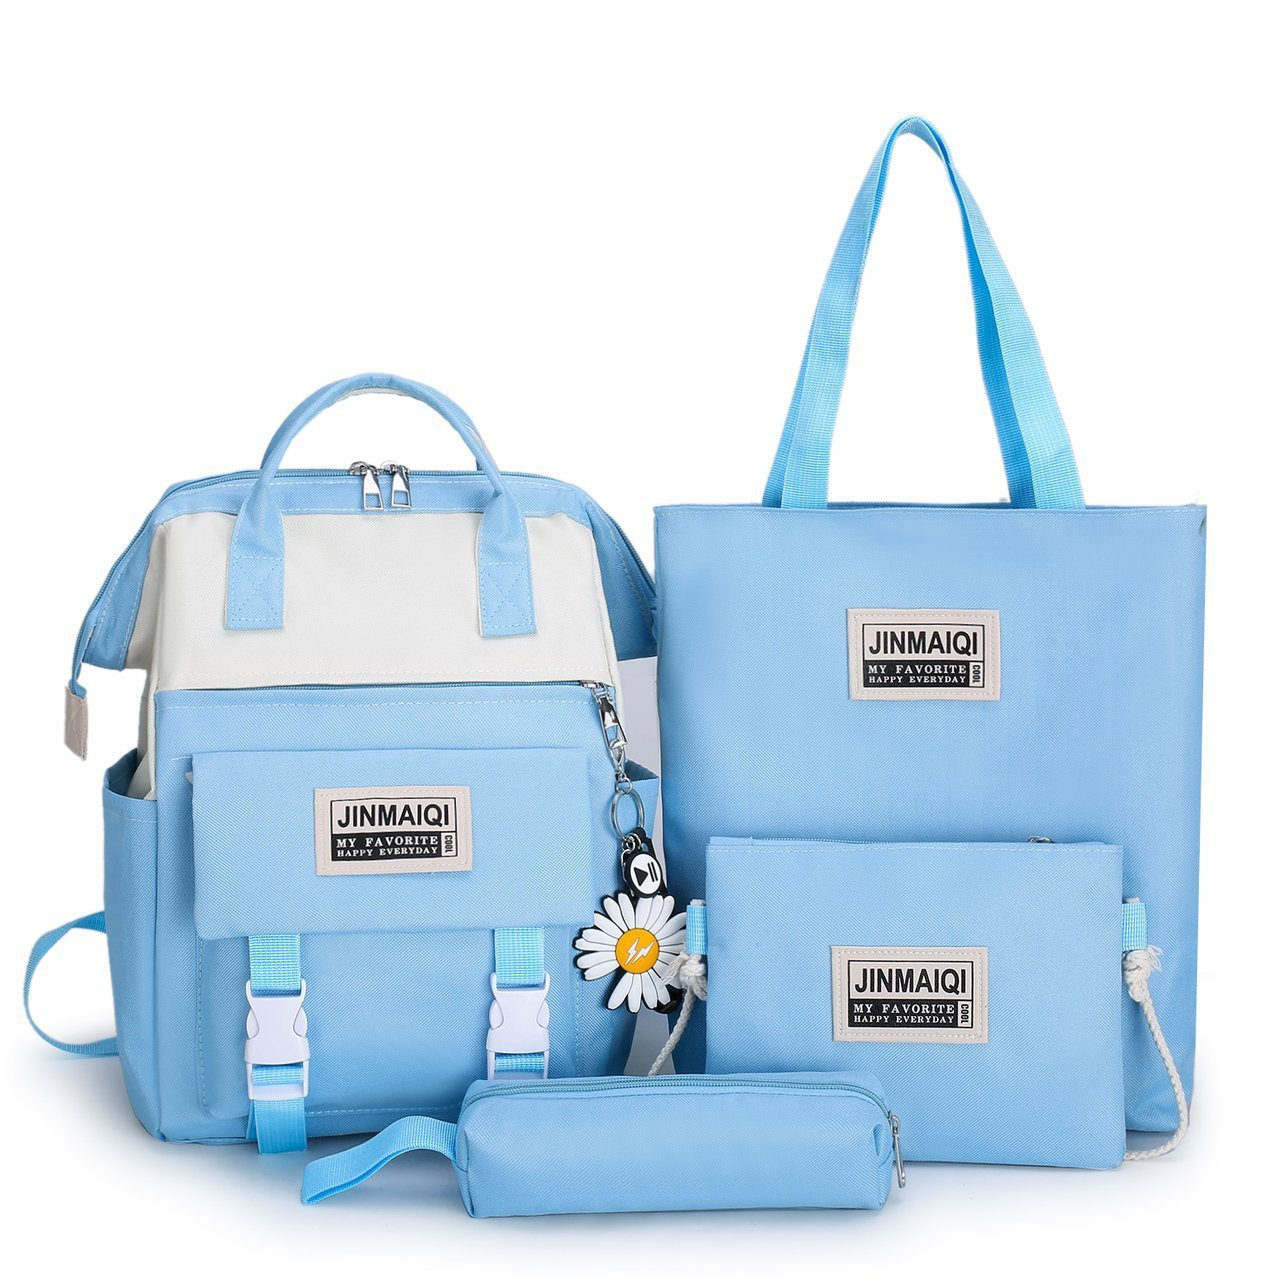 Портфель набор. Комплект сумок в школу. Рюкзак на море. Портфель набор 5 в 1. Jinmaiqi рюкзак.